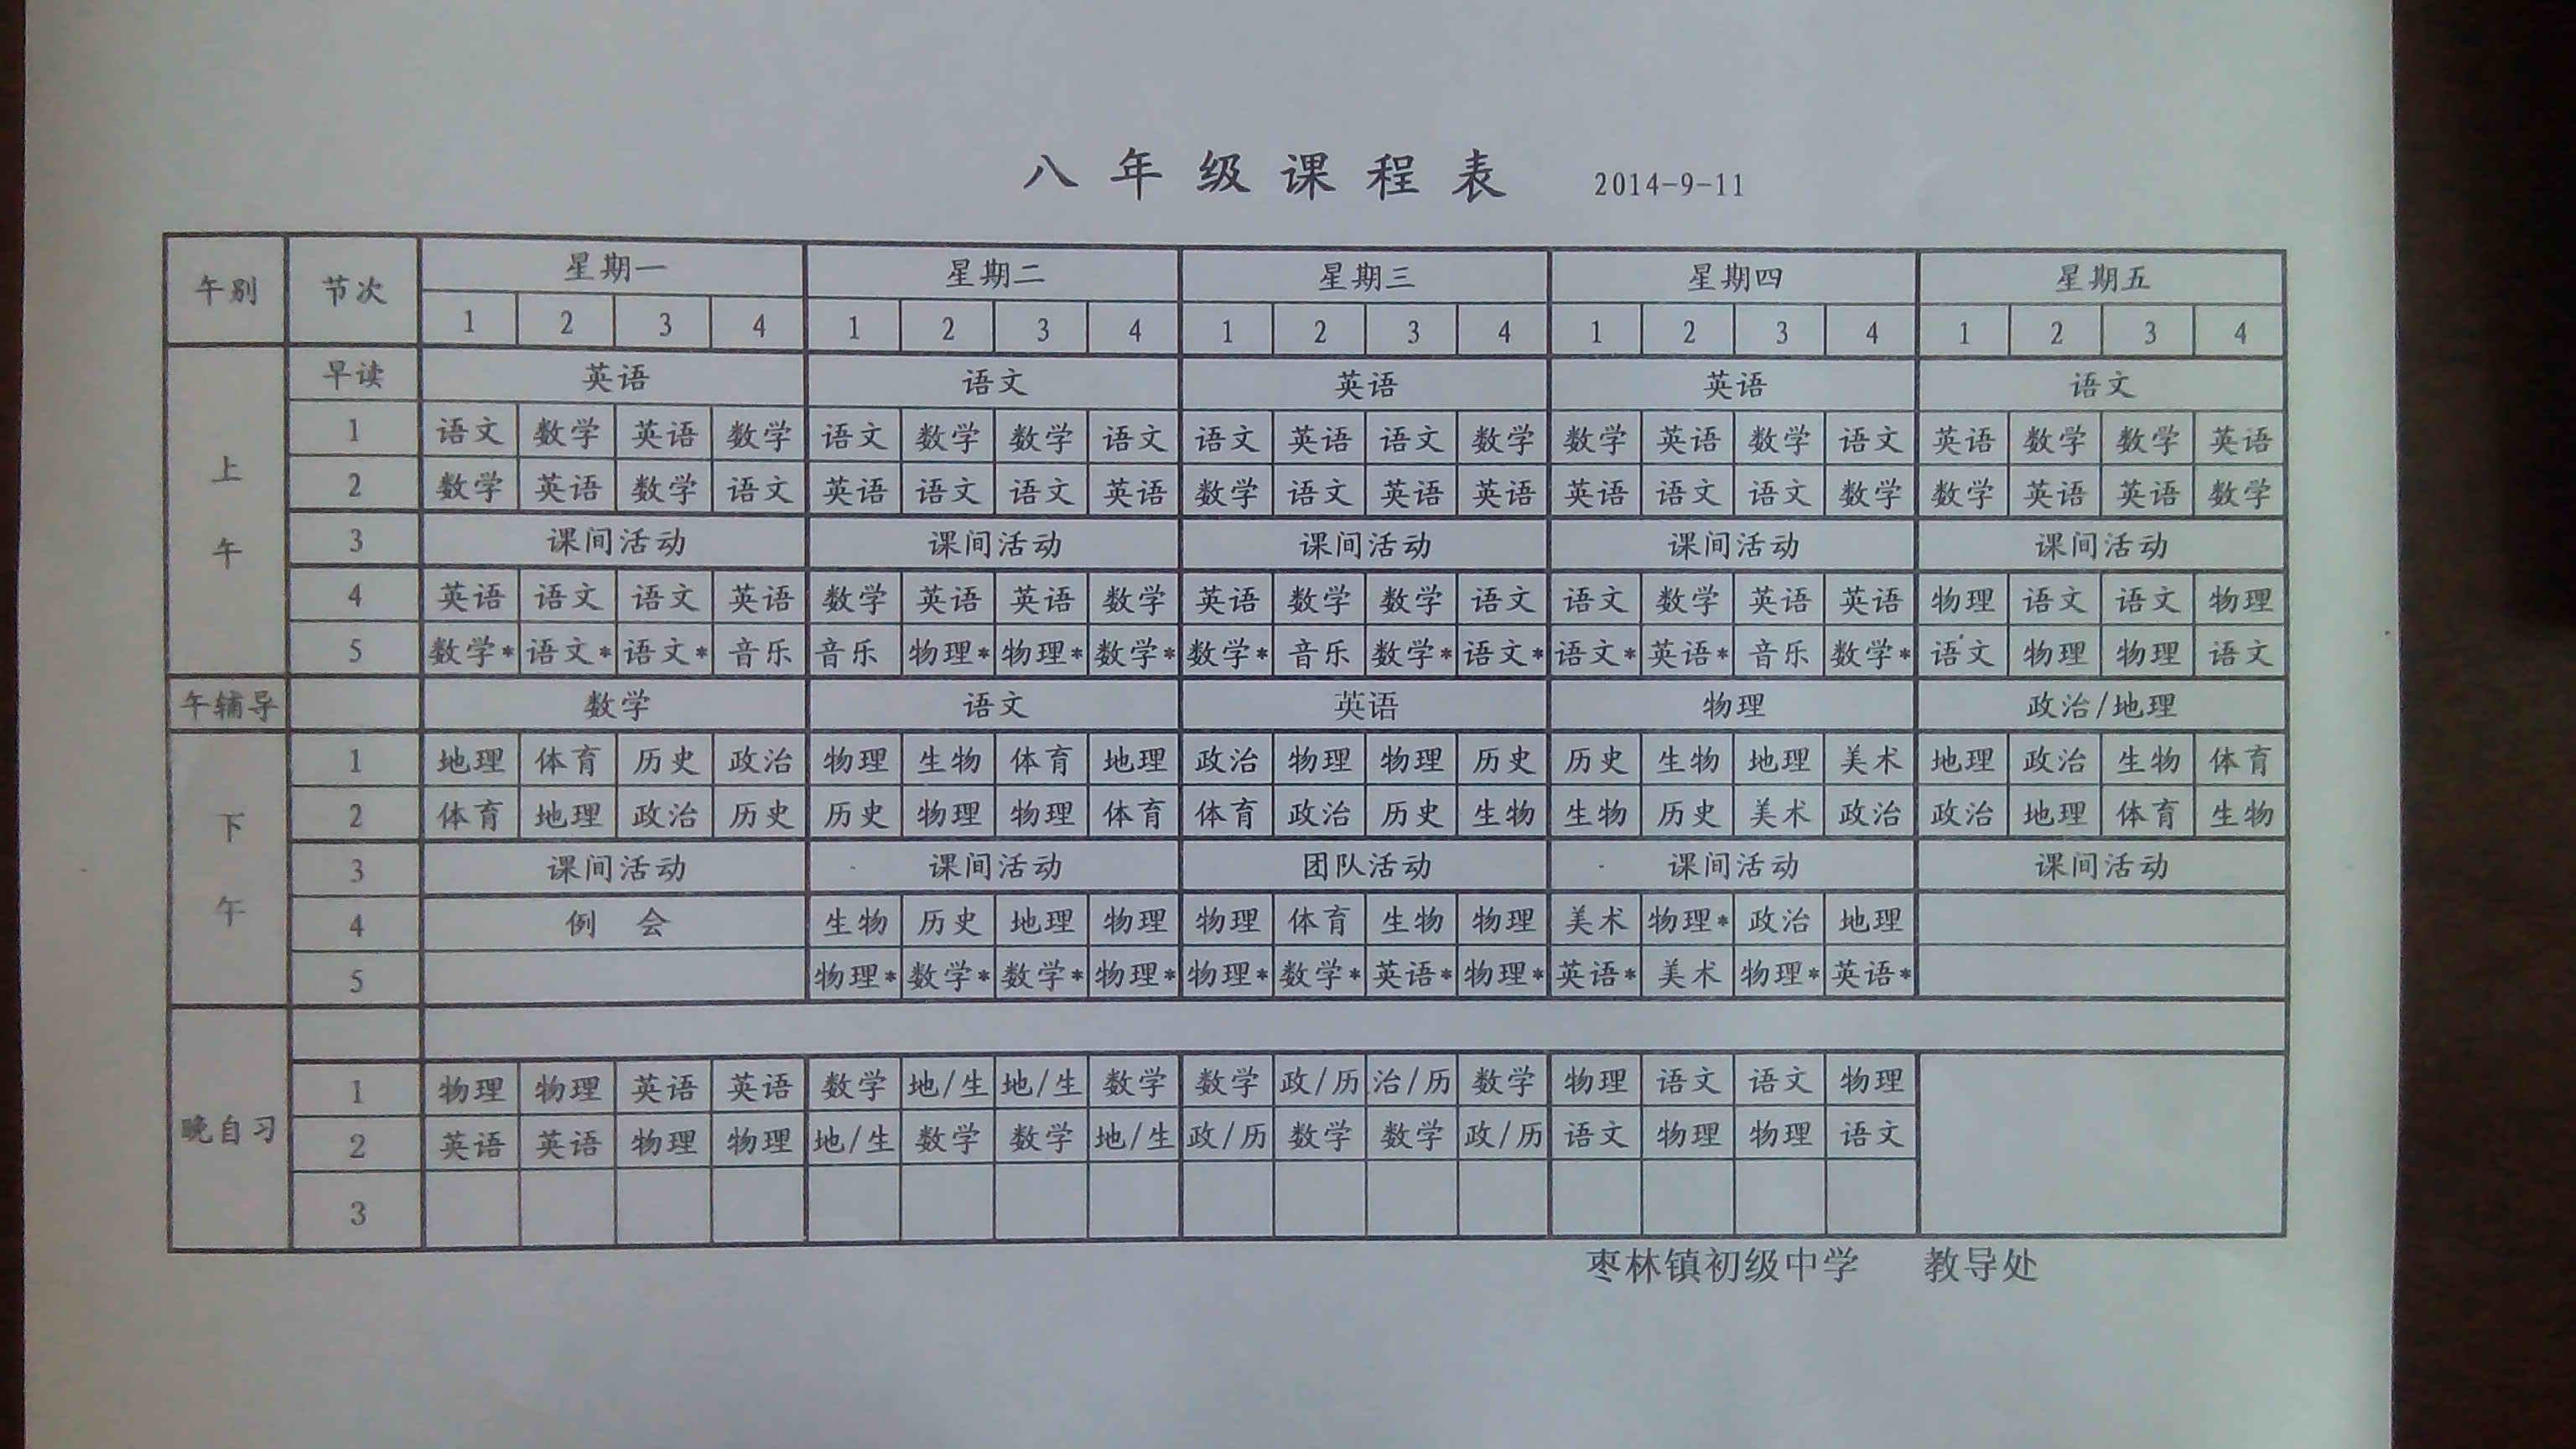 枣林中学团队活动课表